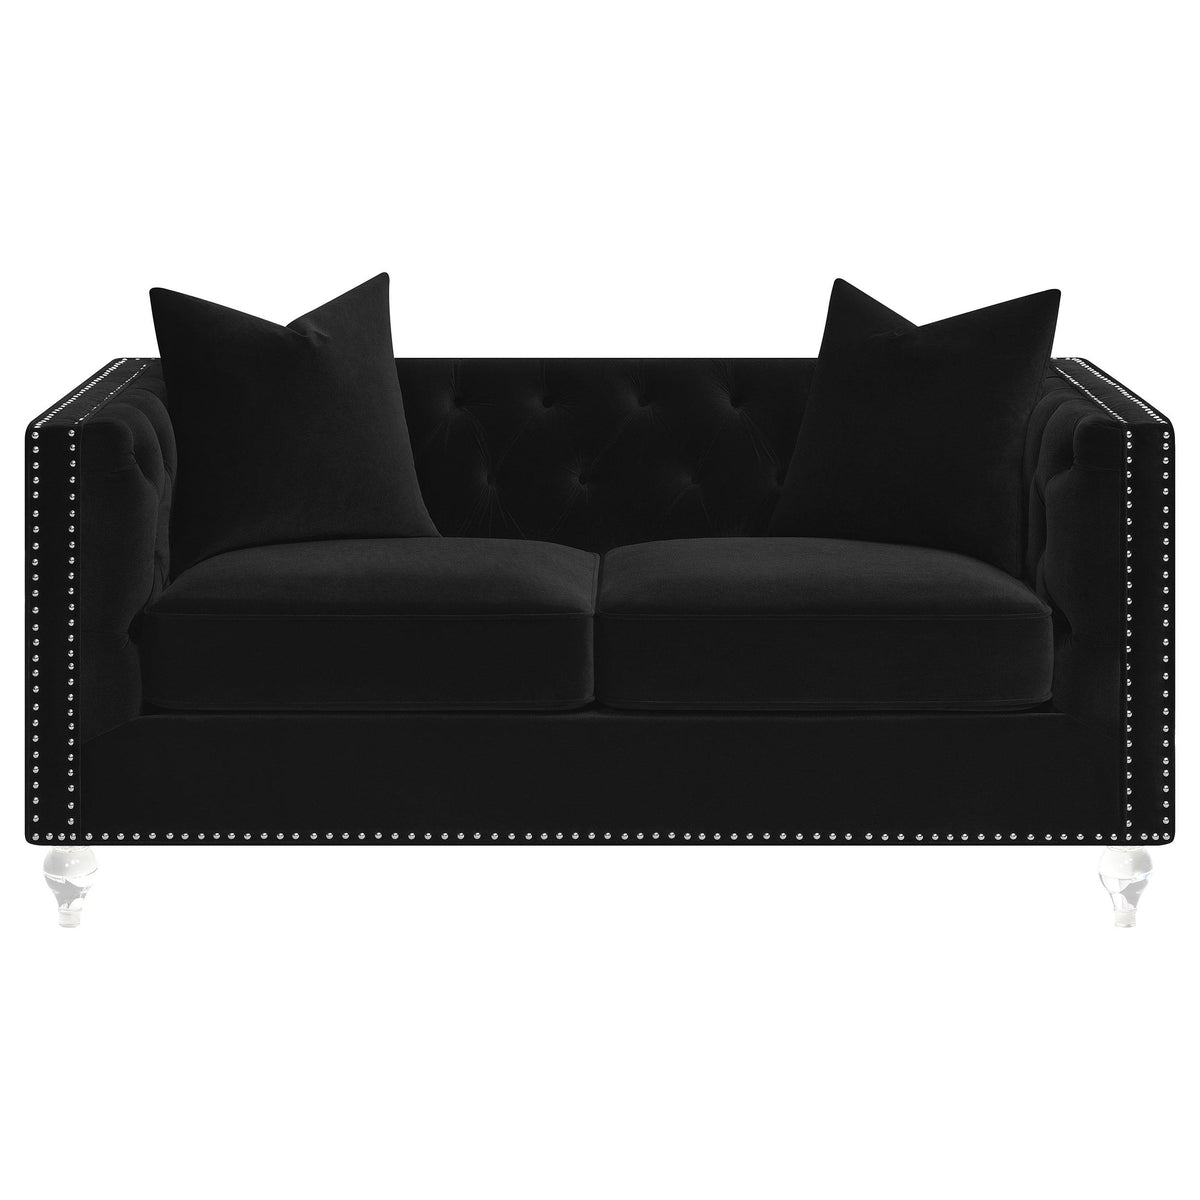 Delilah Upholstered Tufted Tuxedo Arm Loveseat Black  Half Price Furniture